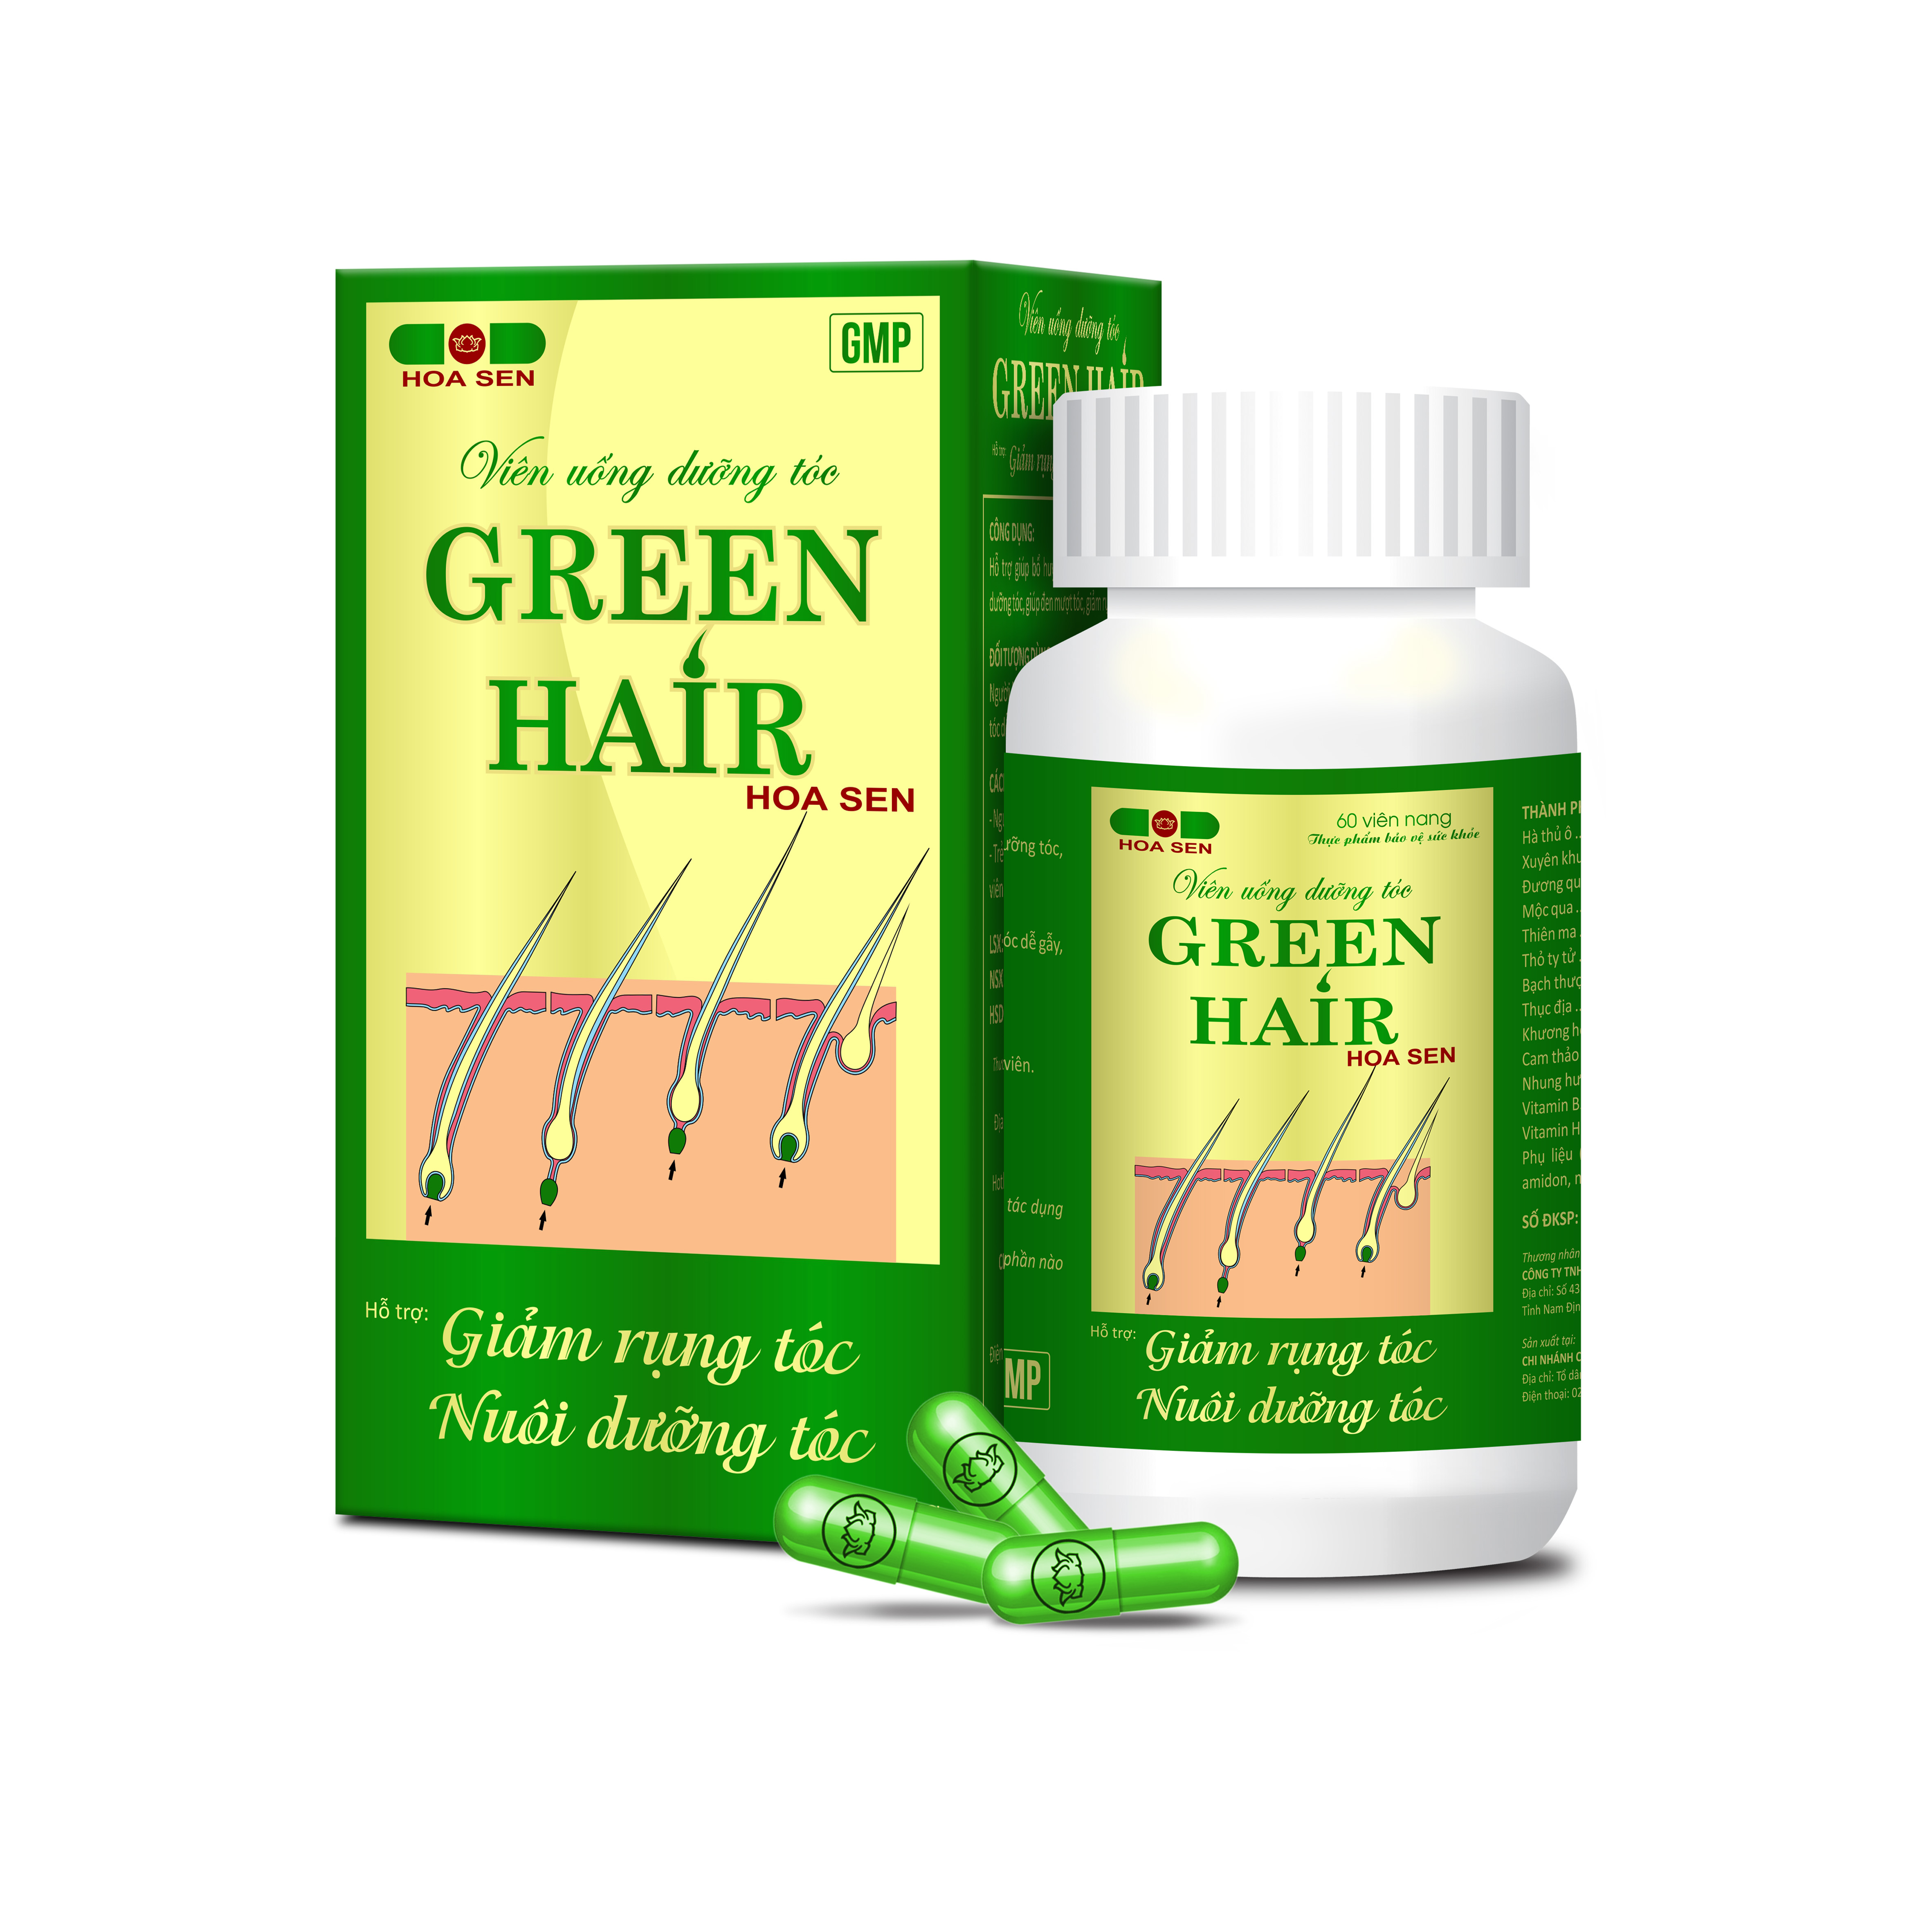 Viên uống dưỡng tóc Green hair Hoa Sen - Dạng lọ (Hàng chính hãng)